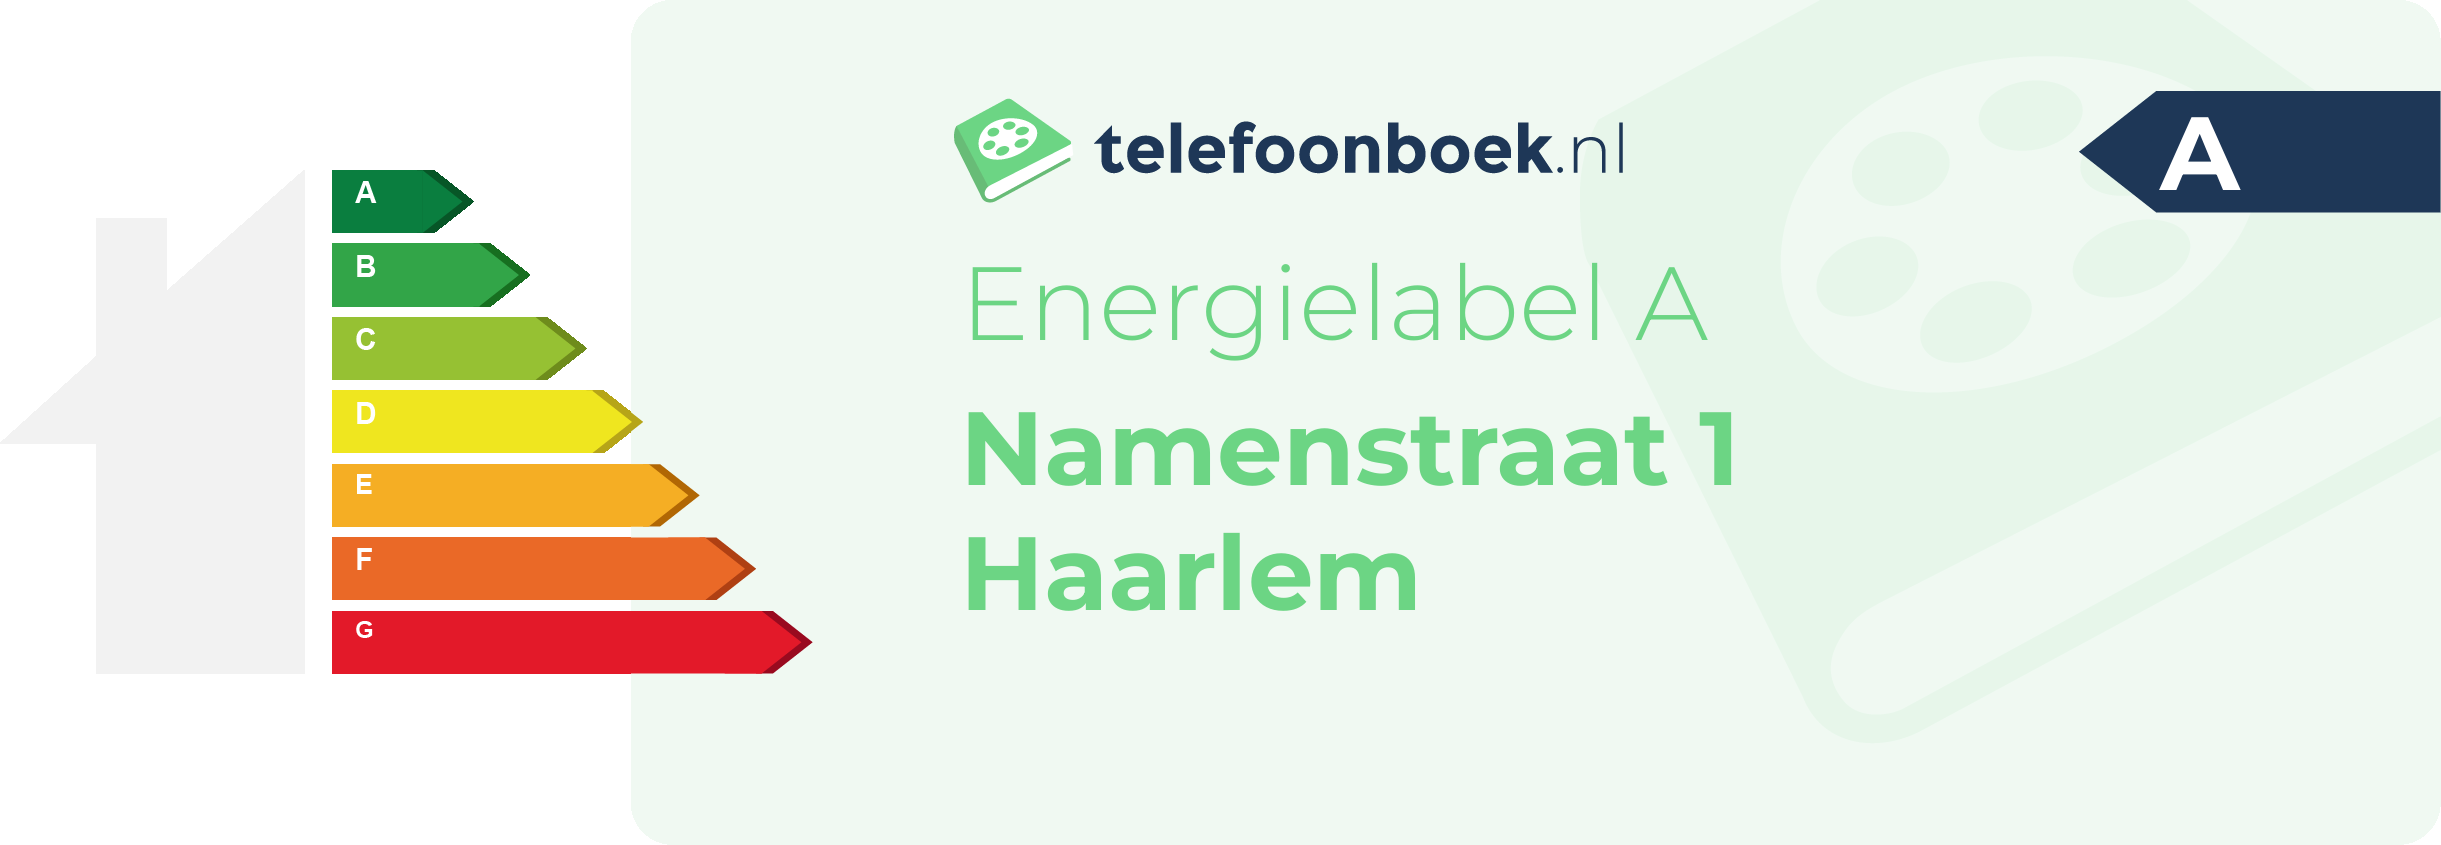 Energielabel Namenstraat 1 Haarlem